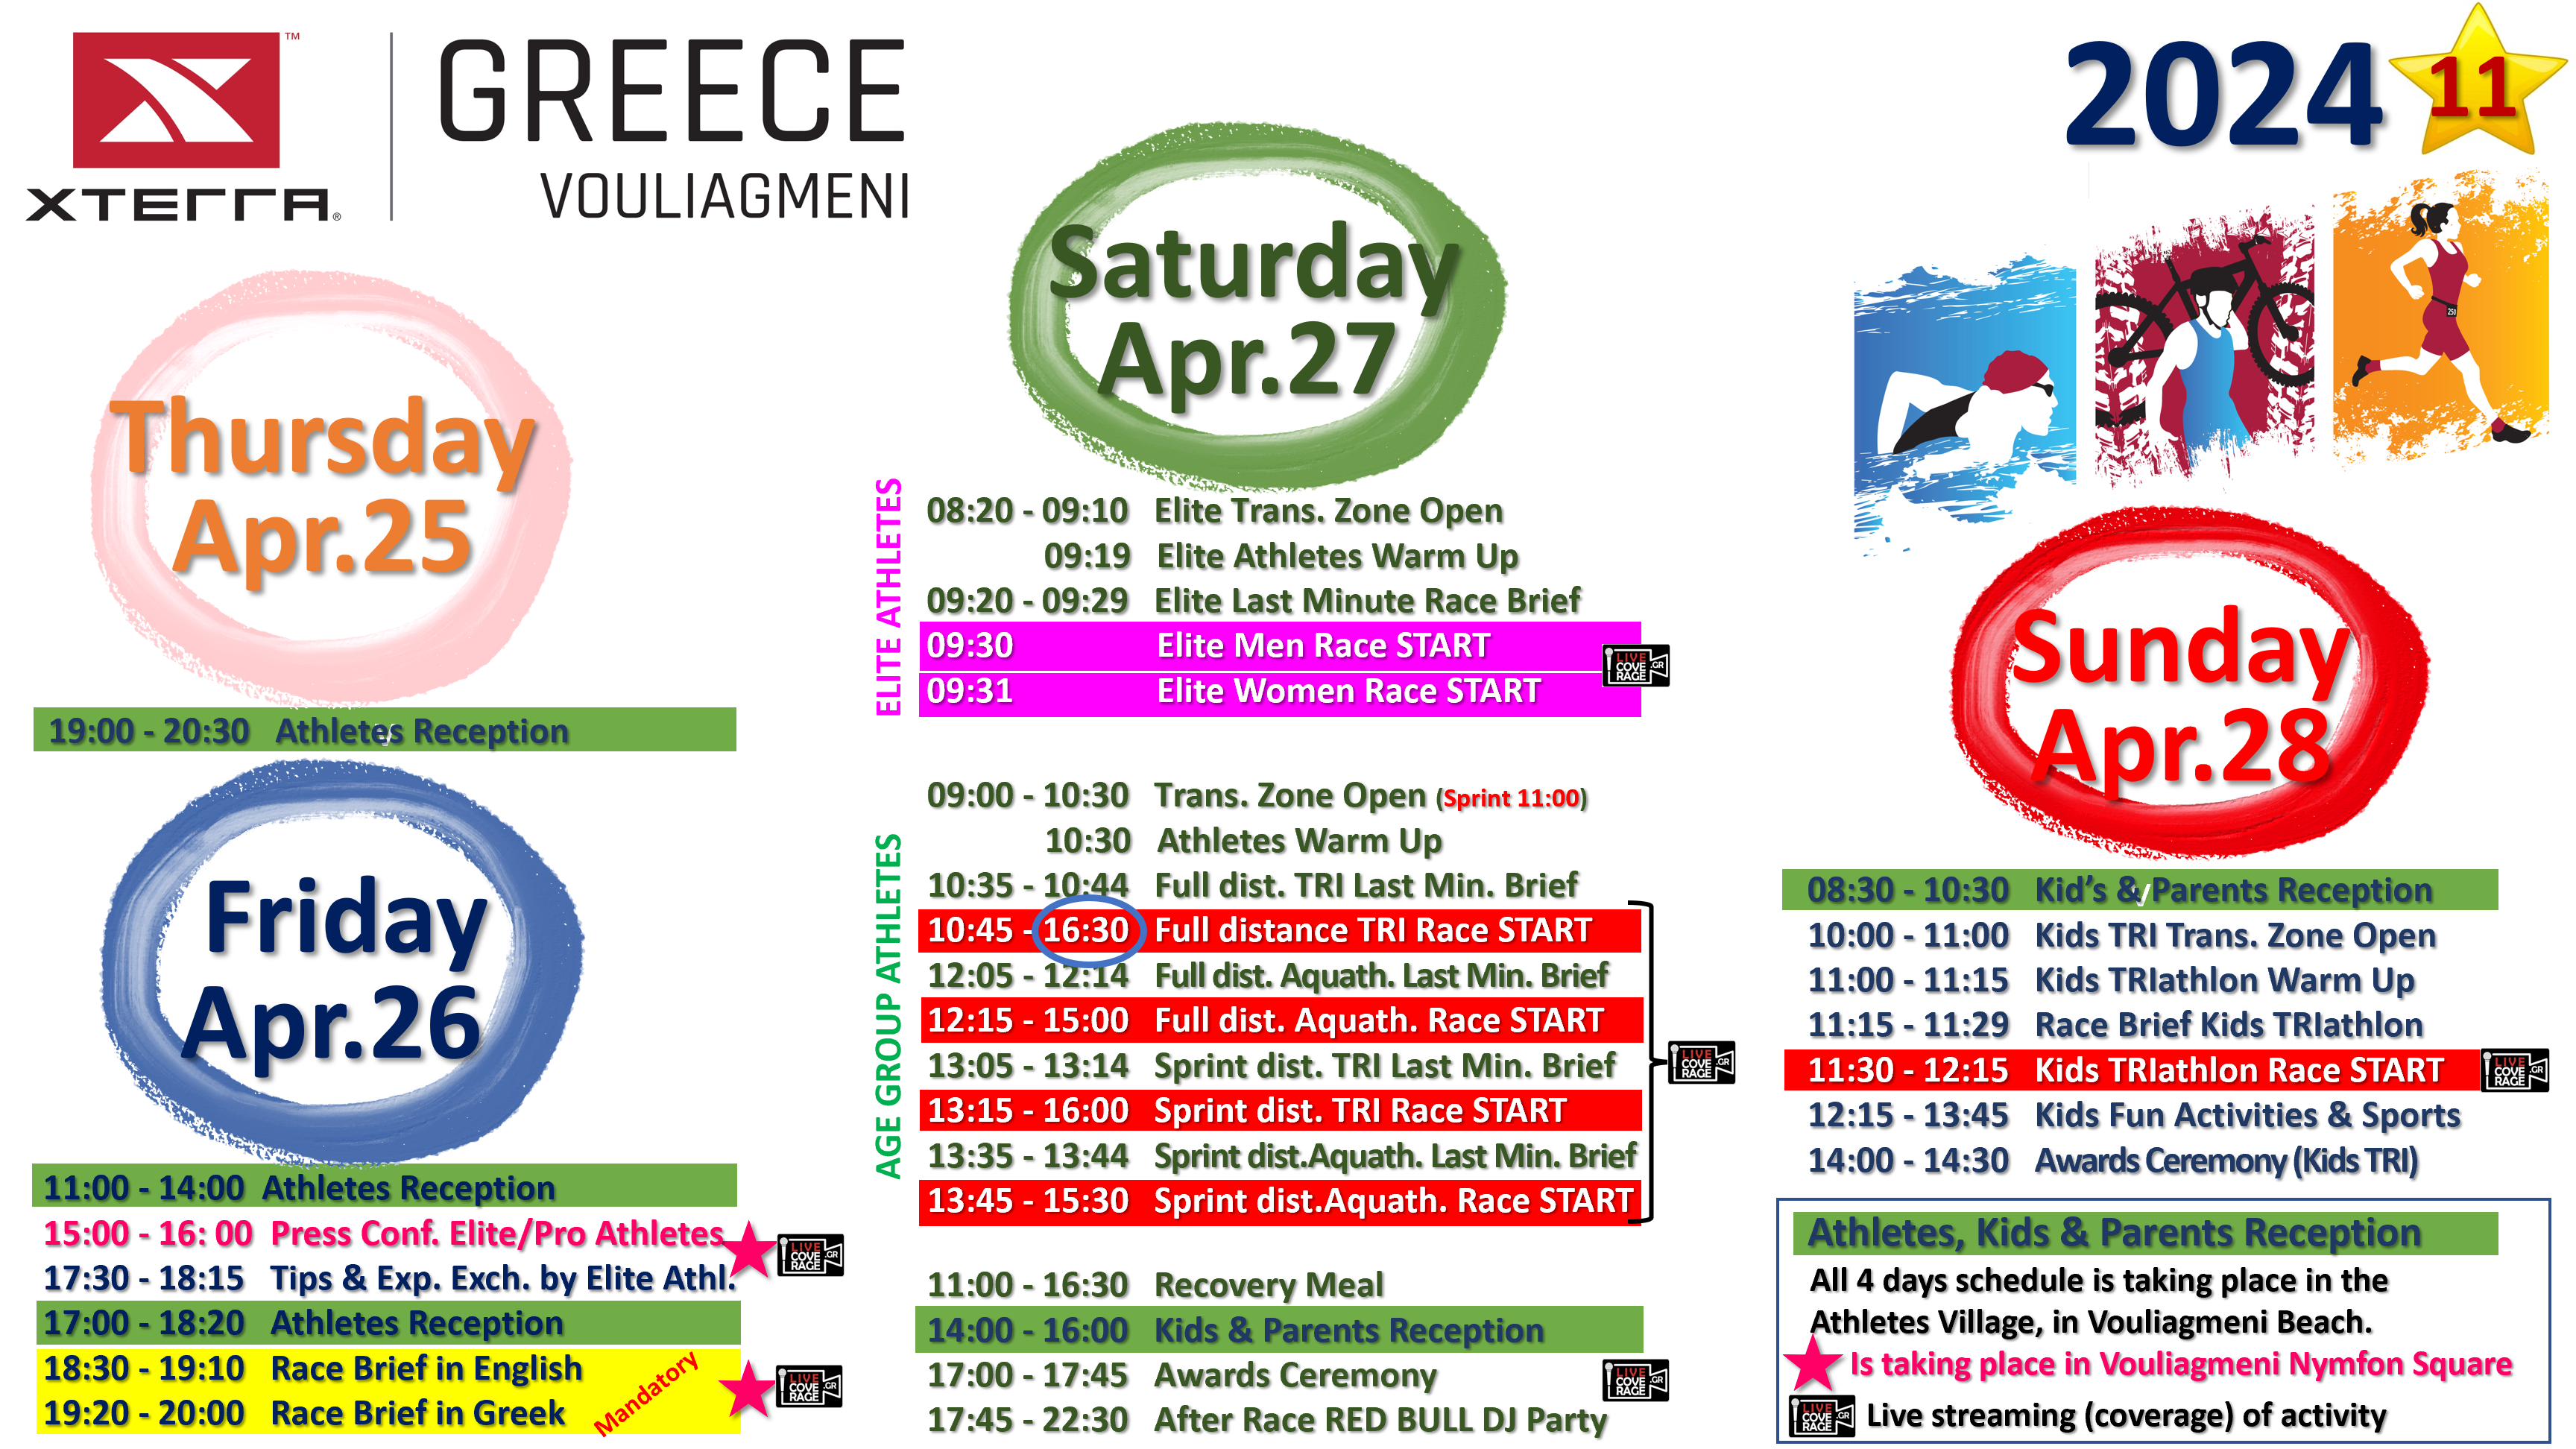 20244 XTERRA Greece Events Schedule